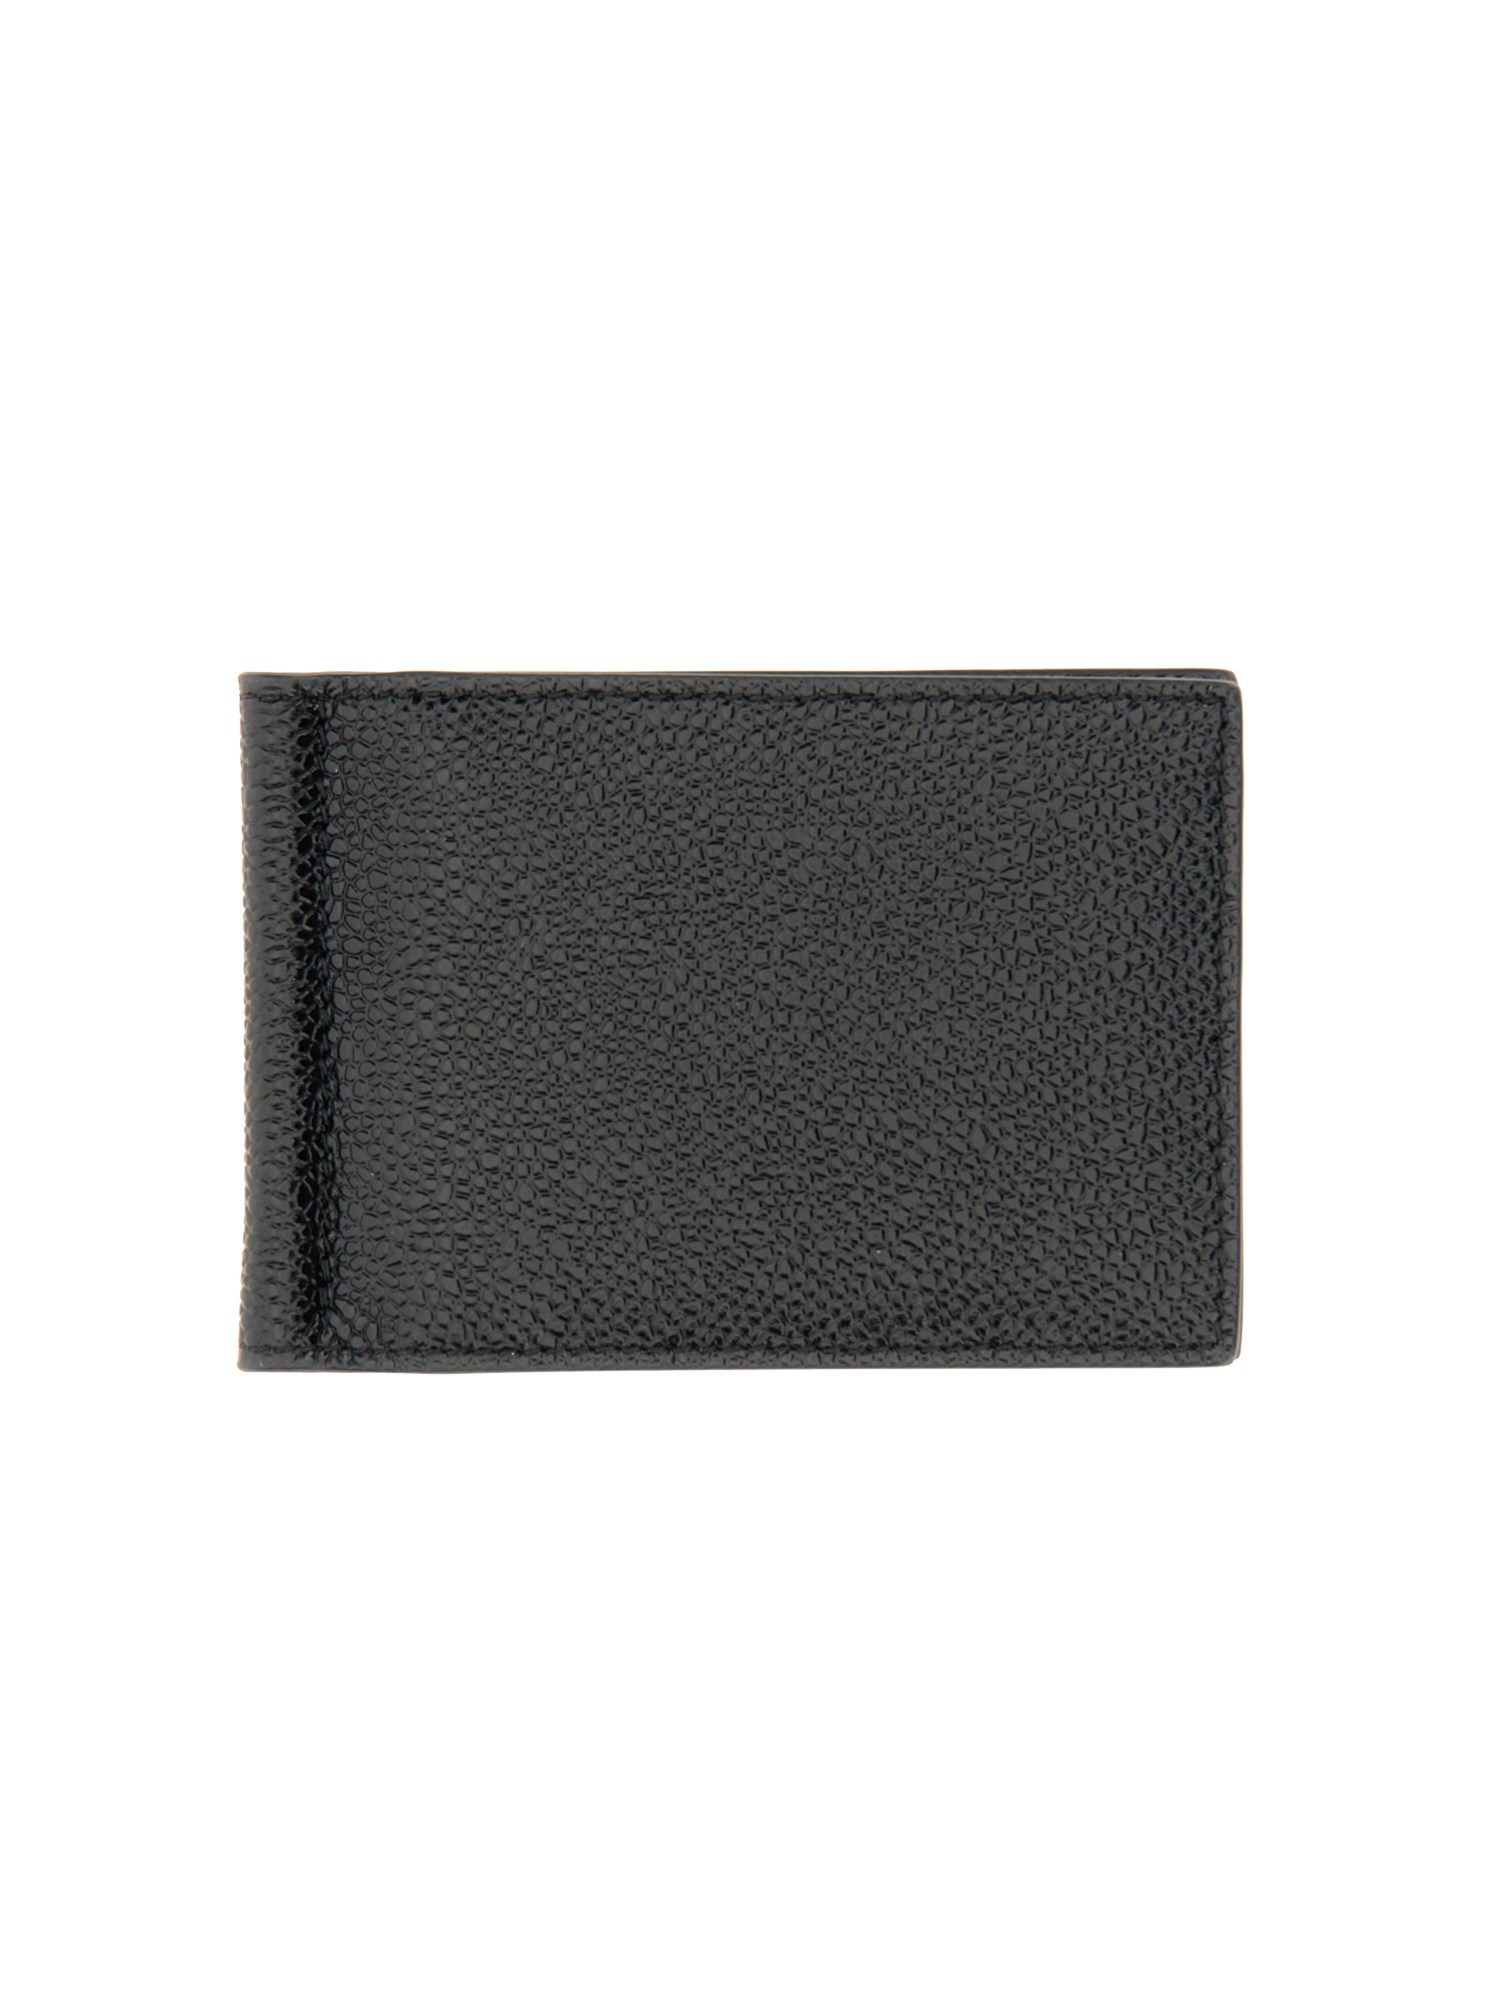 Thom Browne thom browne money clip wallet